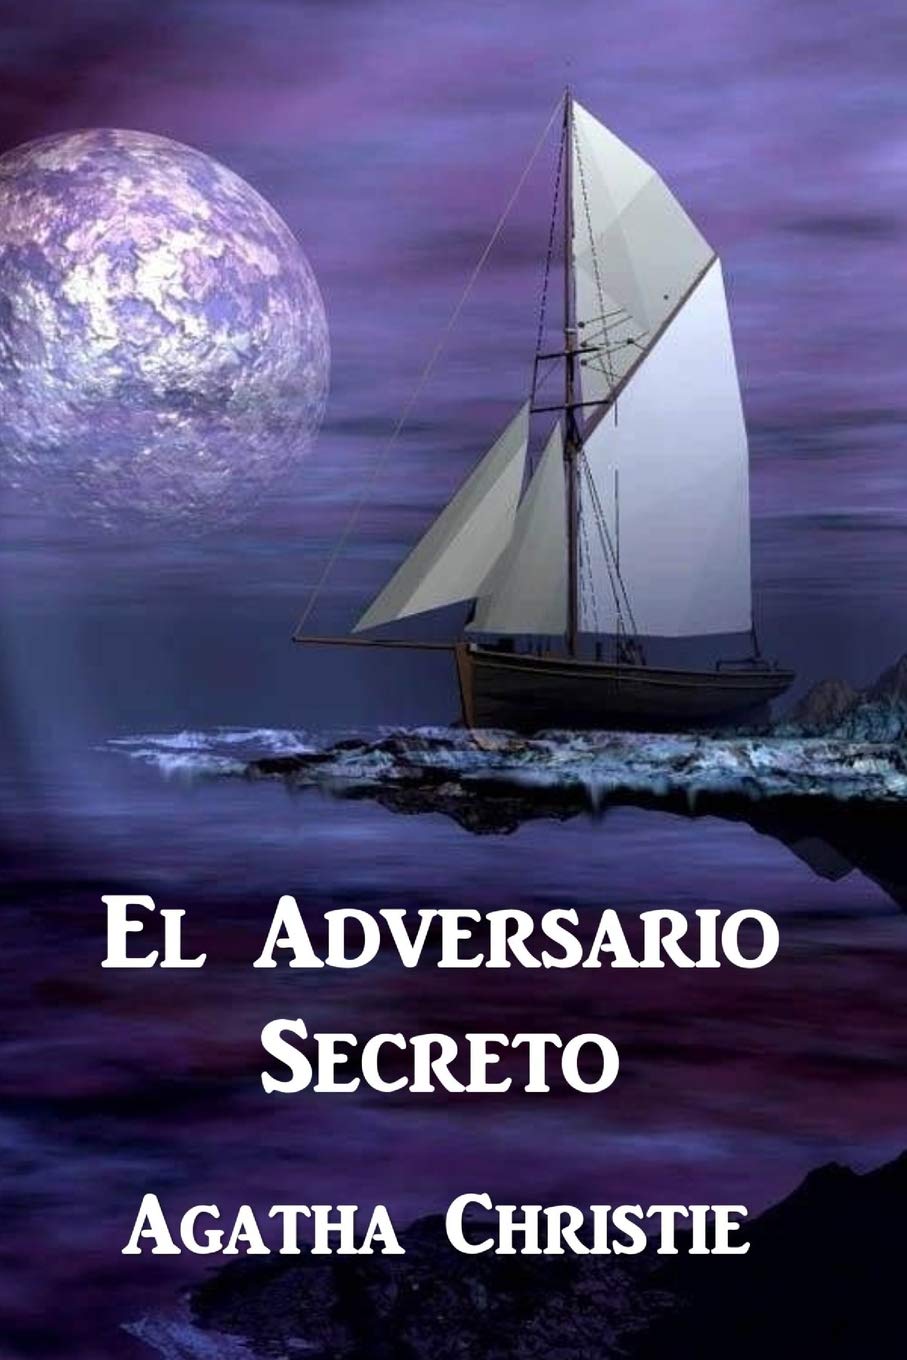 EL ADVERSARIO SECRETO: The Secret Adversary by Agatha Christie